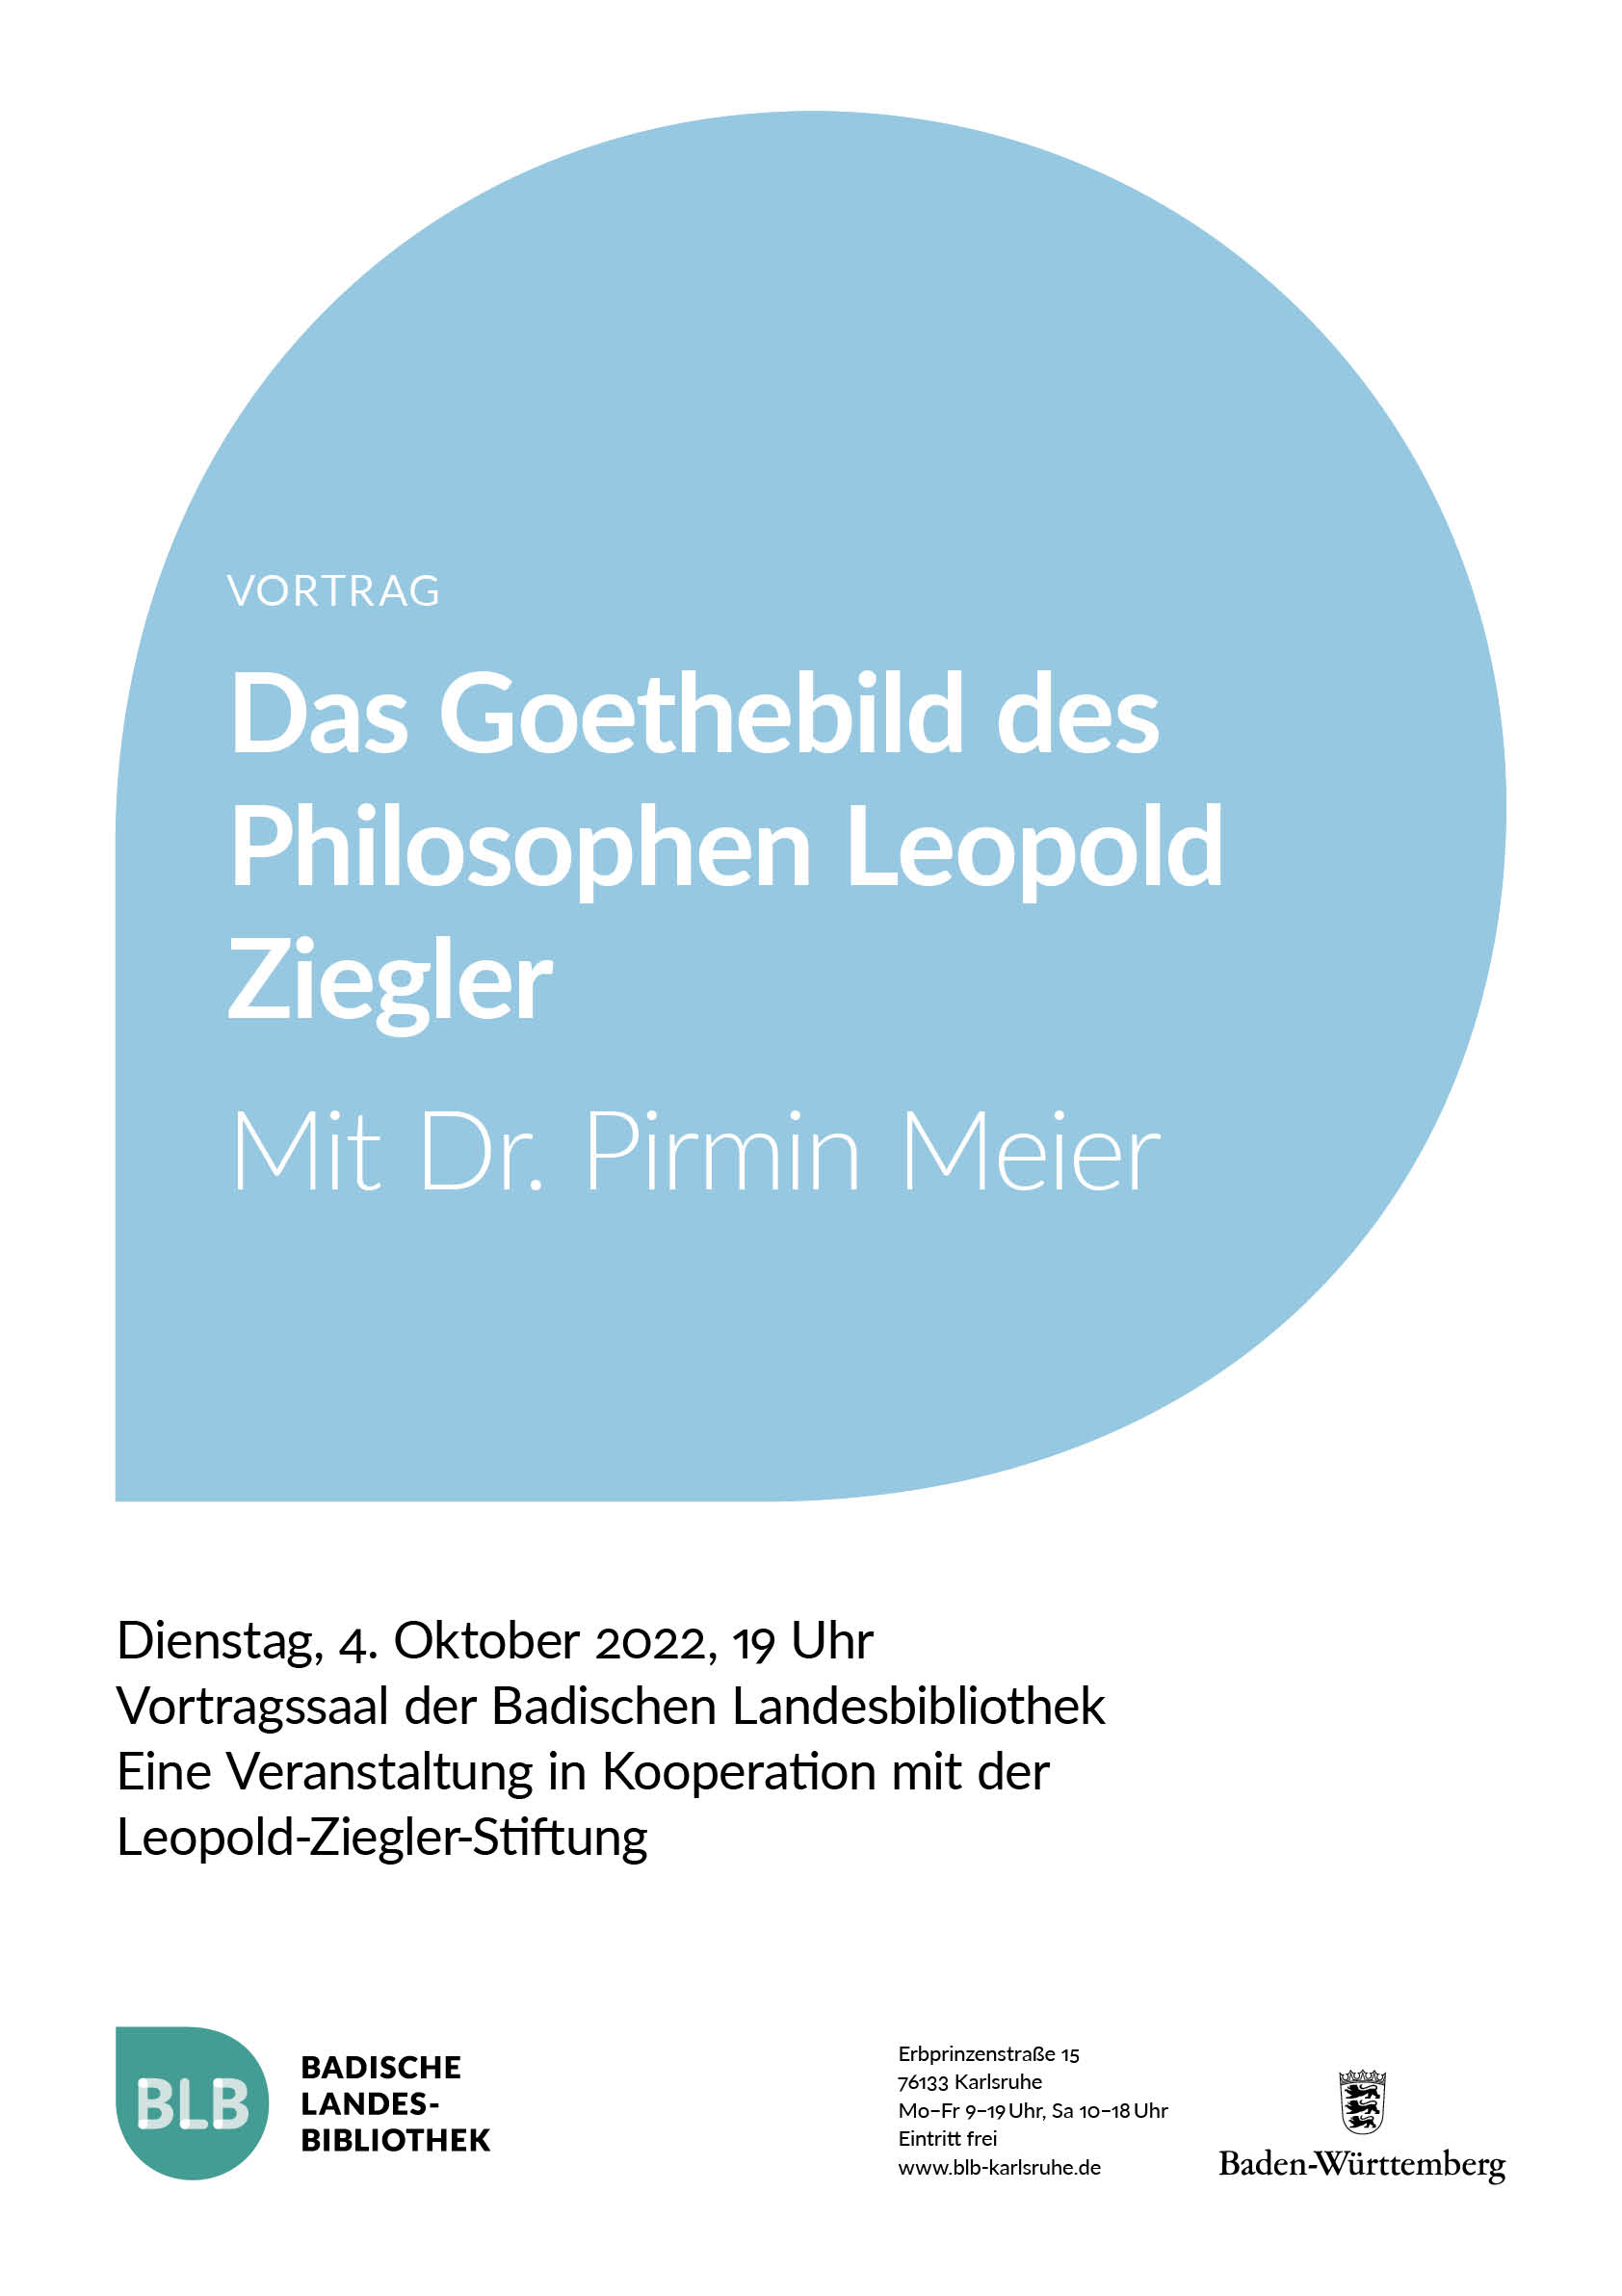 Zu sehen ist das Plakat zum Vortrag "Das Goethebild des Philosophen Leopold Ziegler" auf einem blauen Monogon. Der Vortrag findet mit Dr. Pirmin Meier am Dienstag, den 4. Oktober 2022 um 19 Uhr im Vortragssaal der Badischen Landesbibliothek statt. Die Veranstaltung ist eine Kooperation mi der Leopold-Ziegler-Stiftung. 